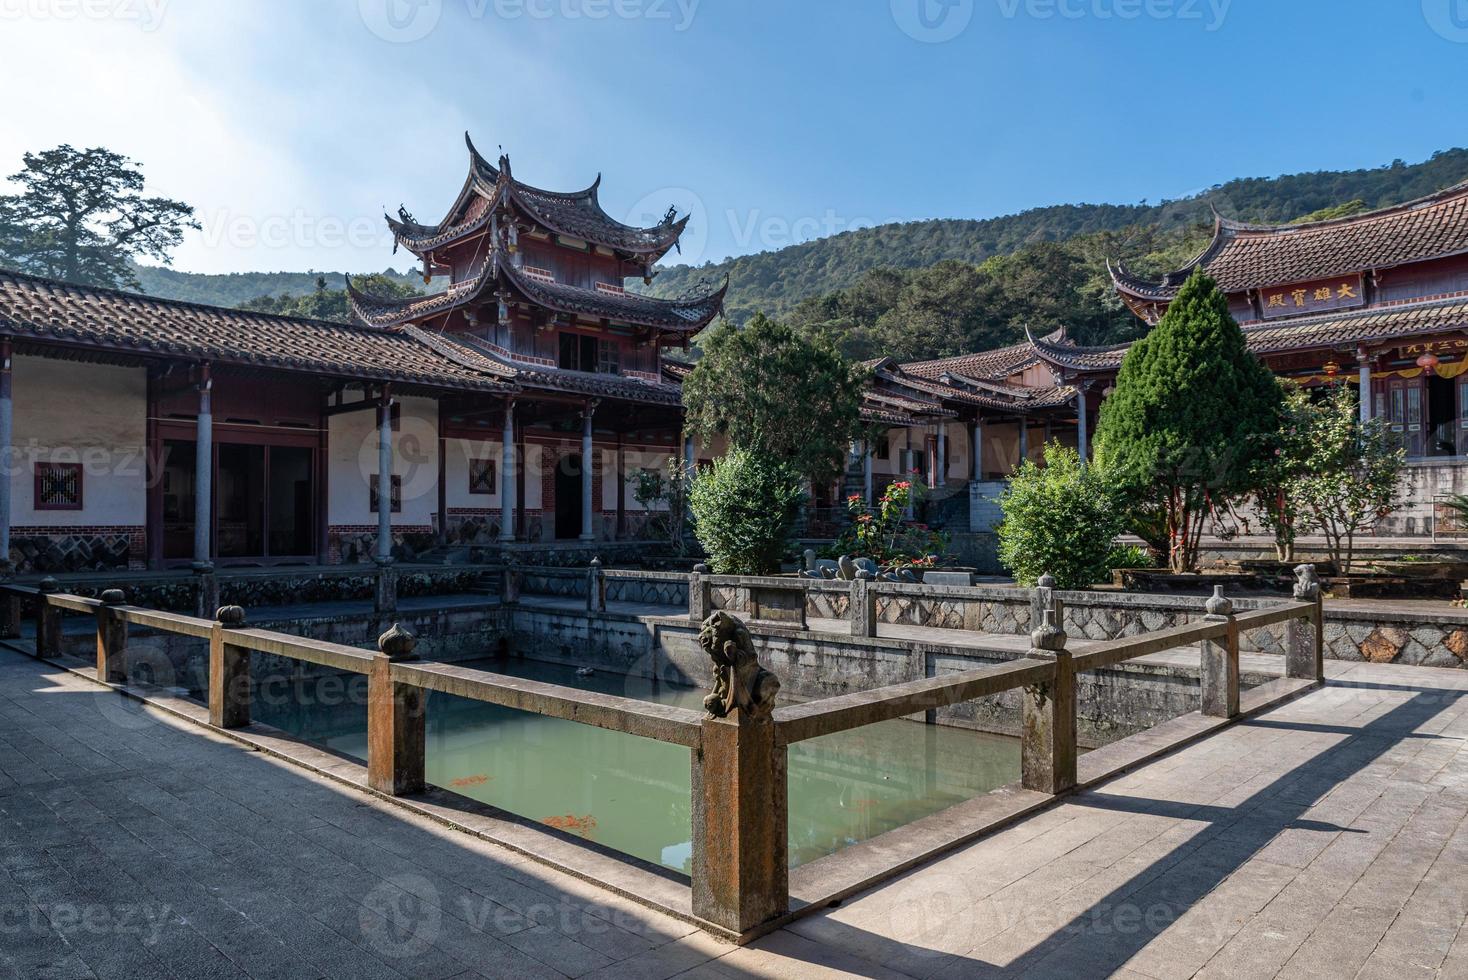 estructura local de los templos budistas tradicionales chinos foto